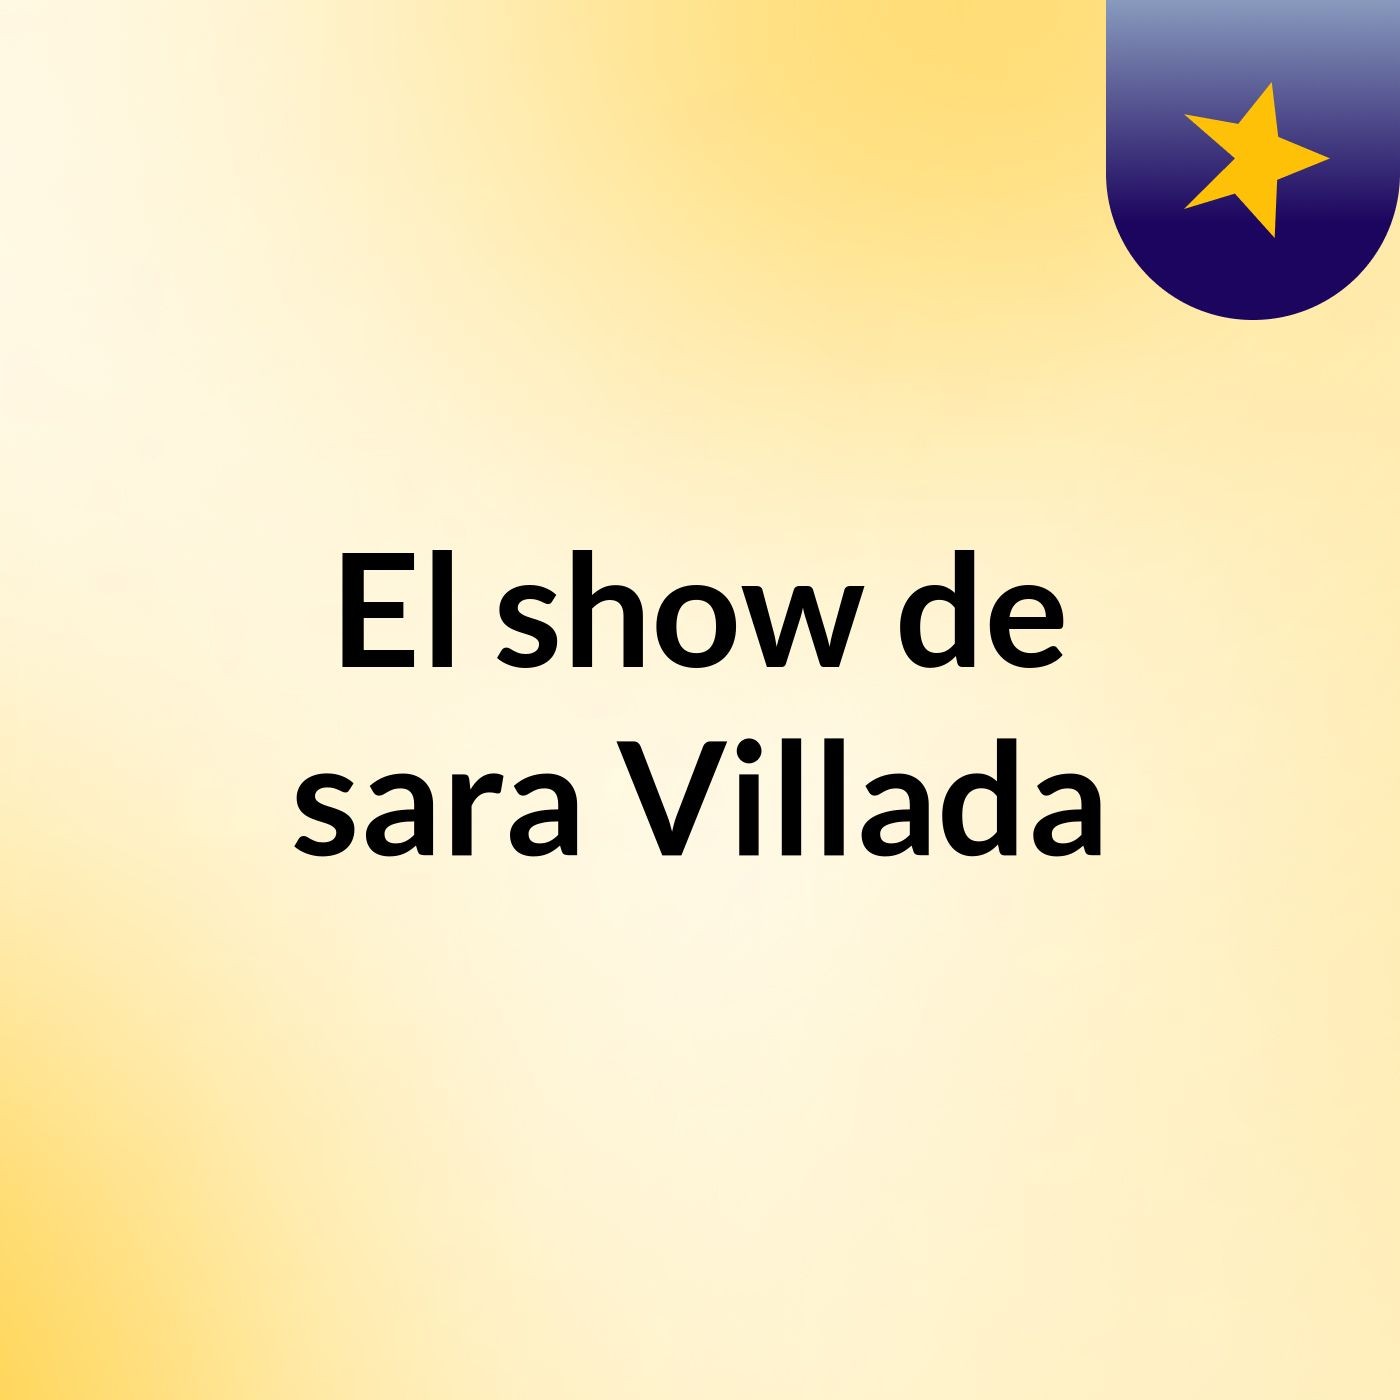 El show de sara Villada